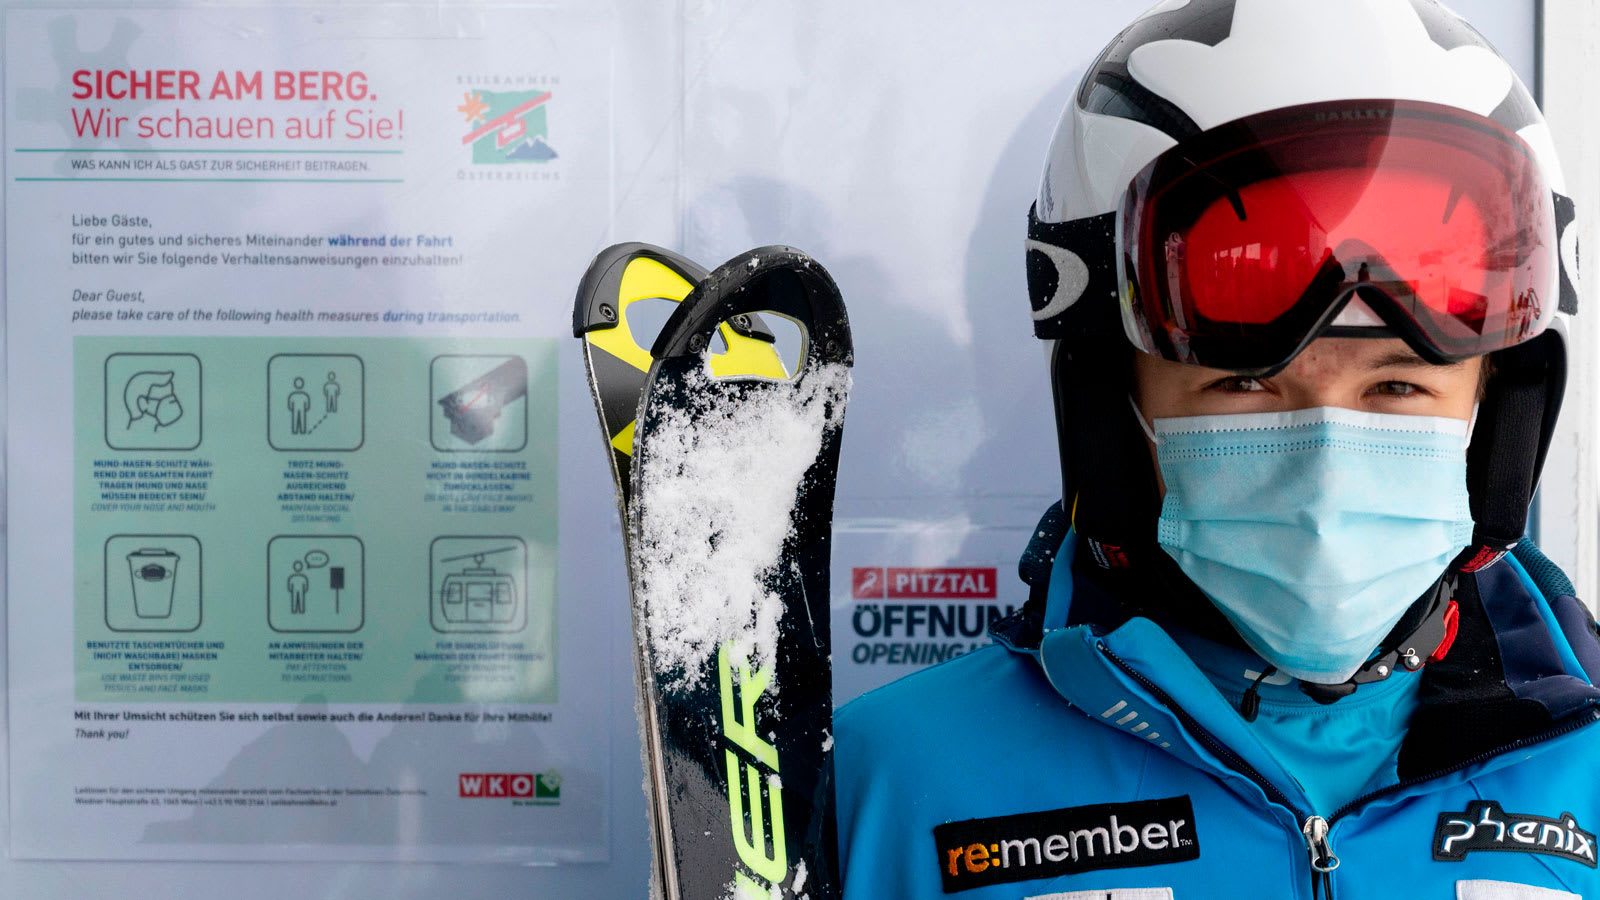 منتجعات التزلج في أوروبا تشهد "موسم من الجحيم" هذا الشتاء بسبب كورونا